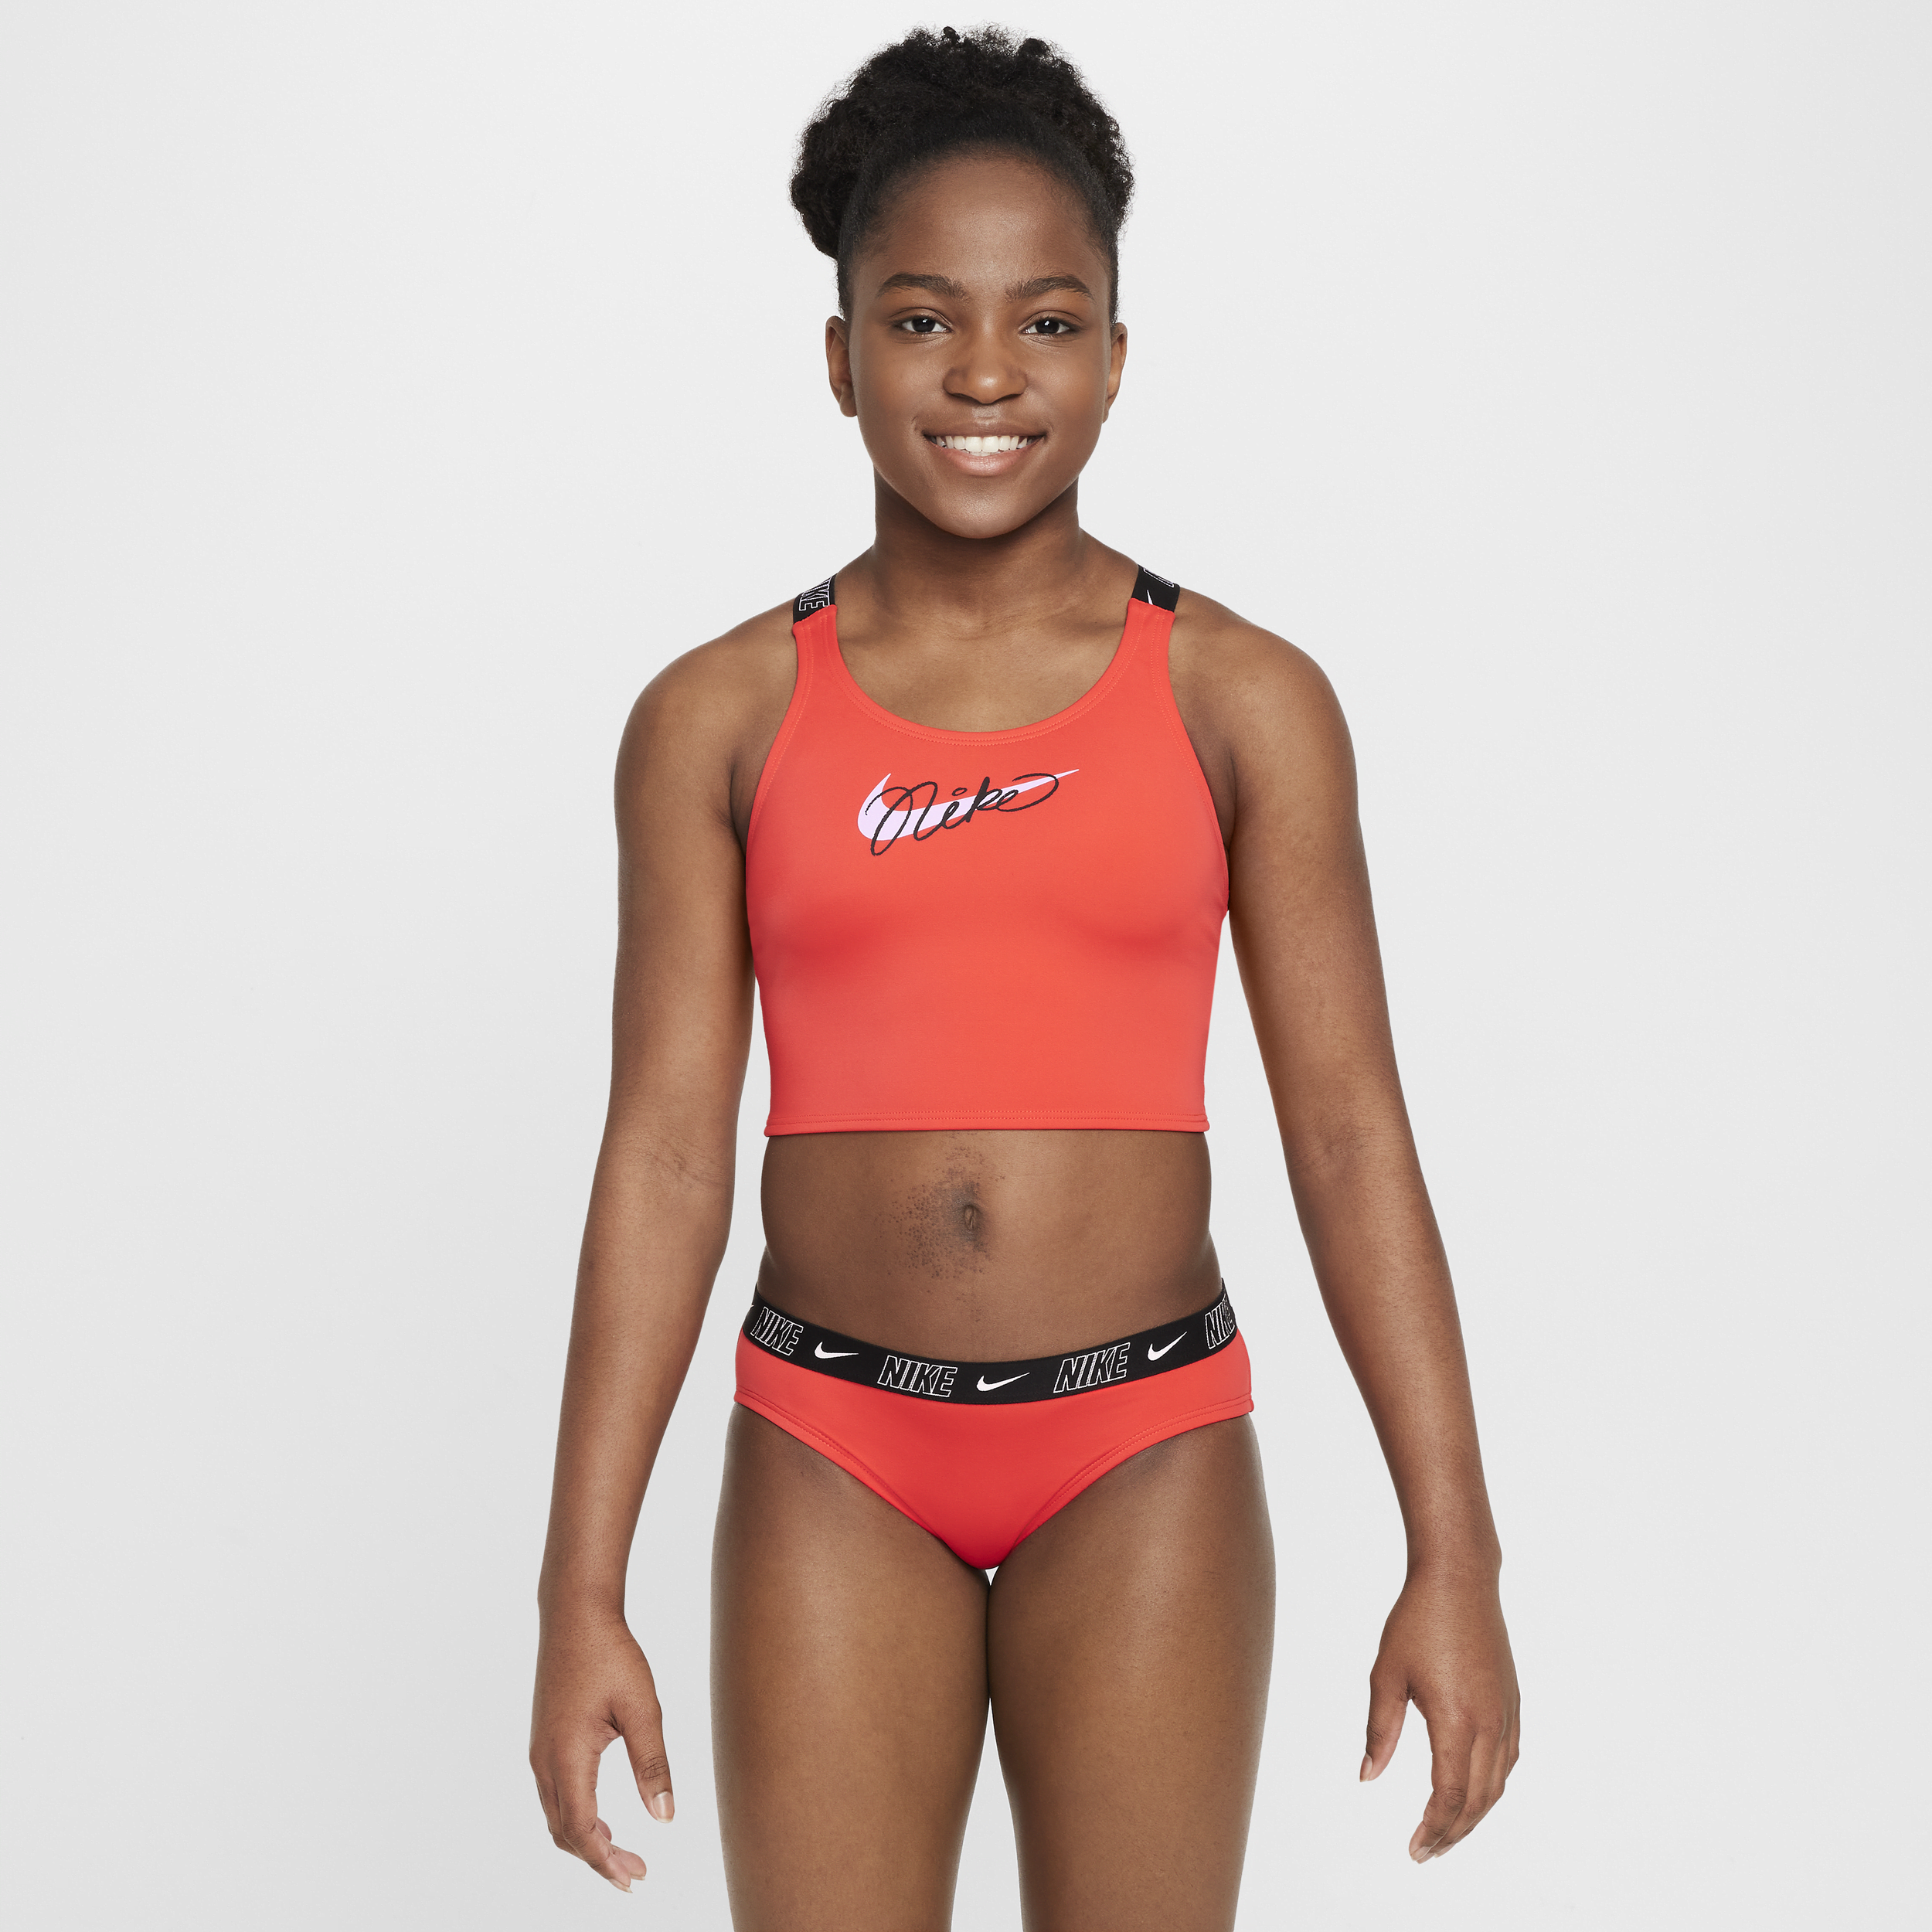 Nike Swim midkiniset met gekruiste bandjes voor meisjes - Rood